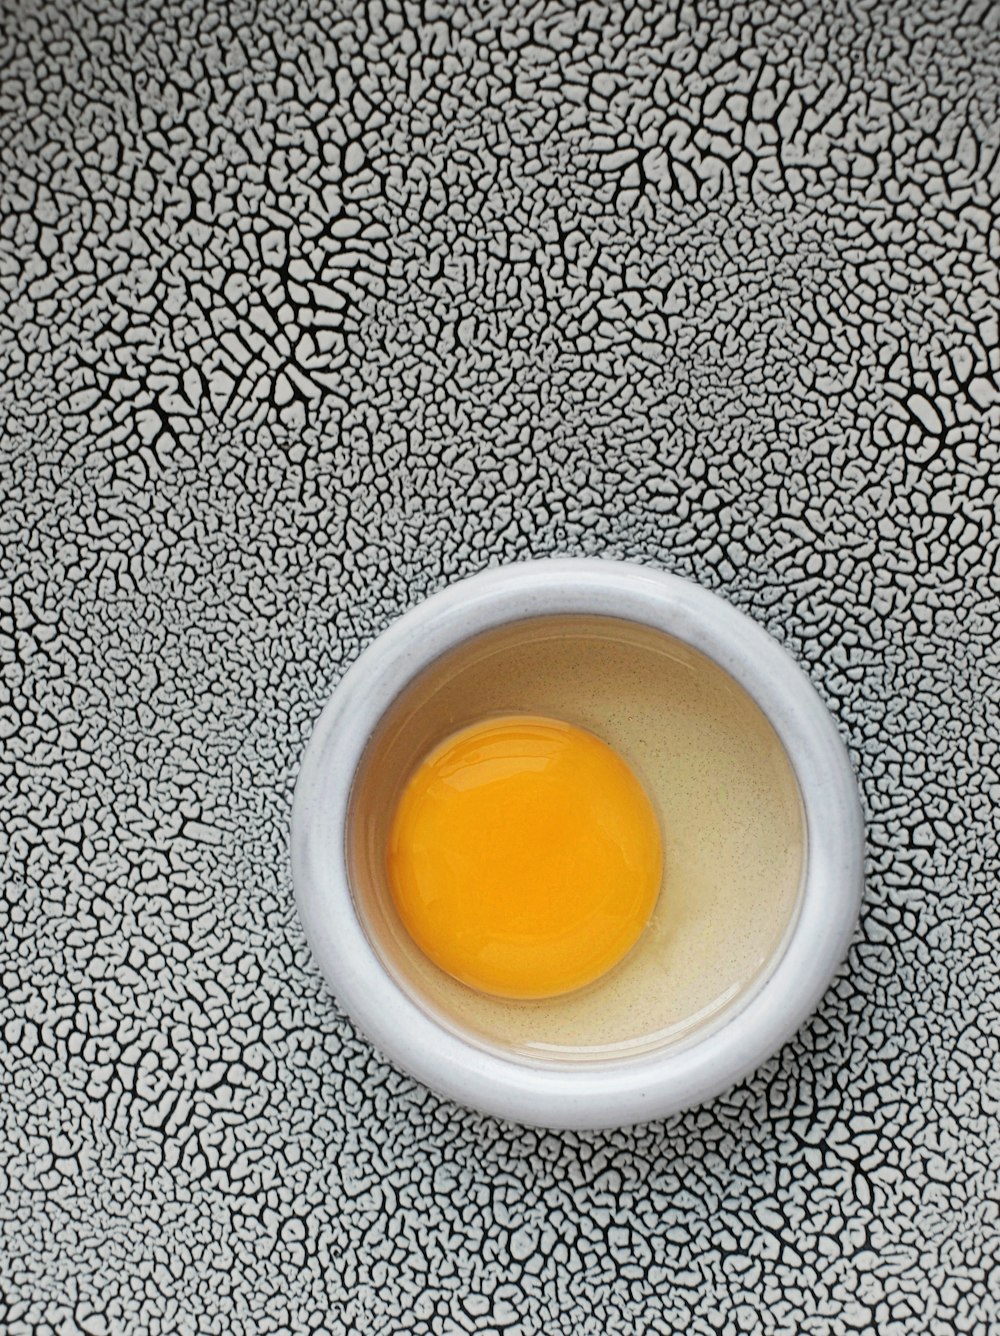 egg yolk on round white bowl